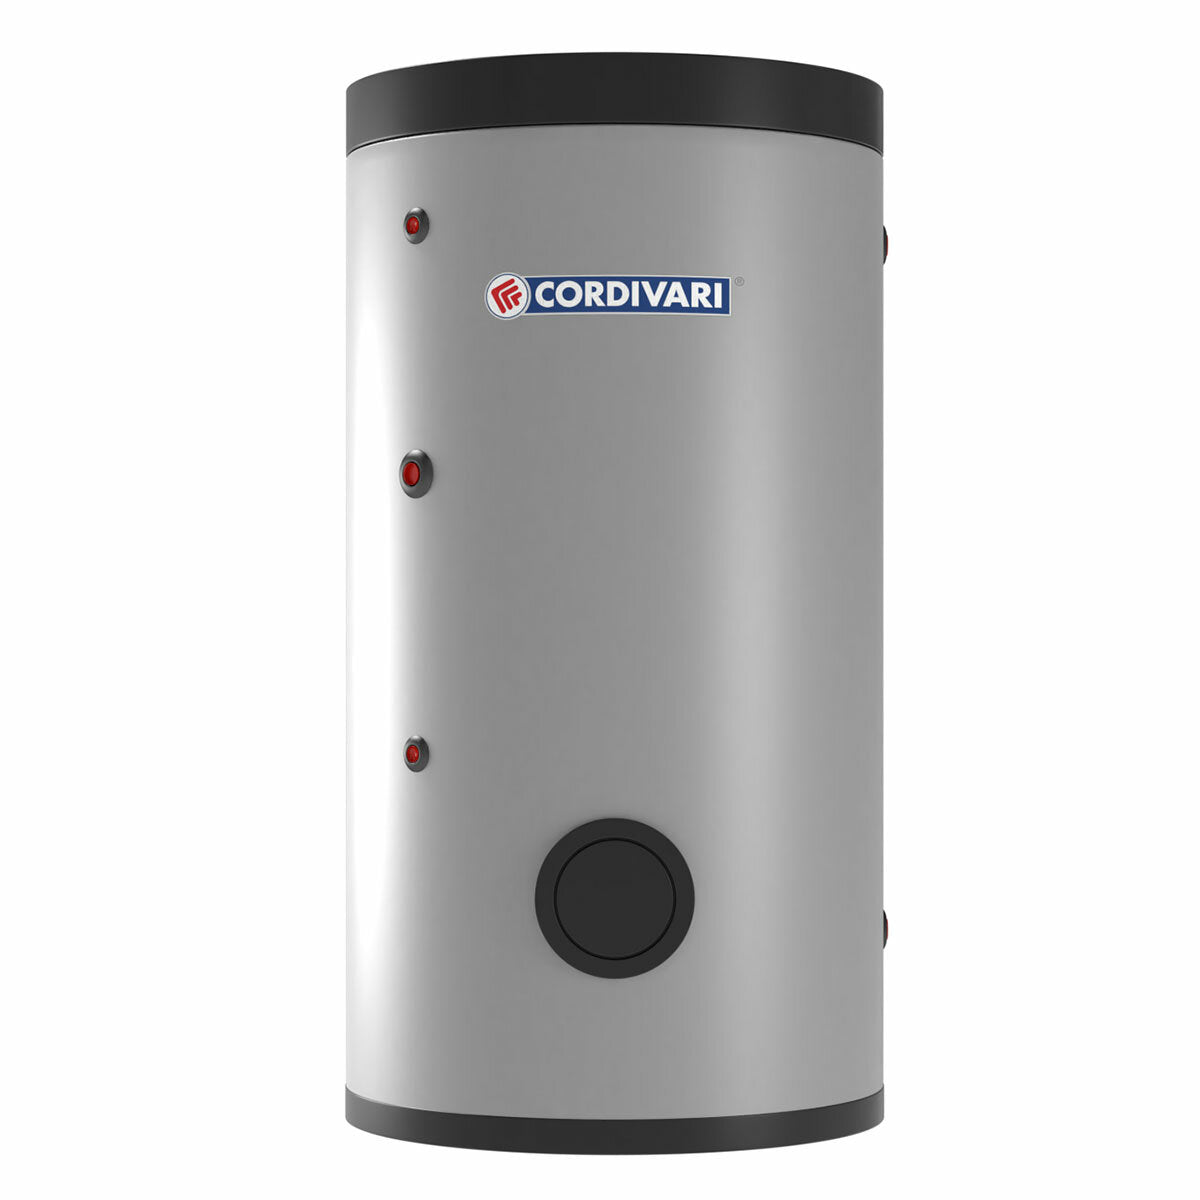 Cordivari BOLLY 1 ST WB Vertikal Wasserkessel für sanitäres Warmwasser mit festem Wärmetauscher 300 Liter